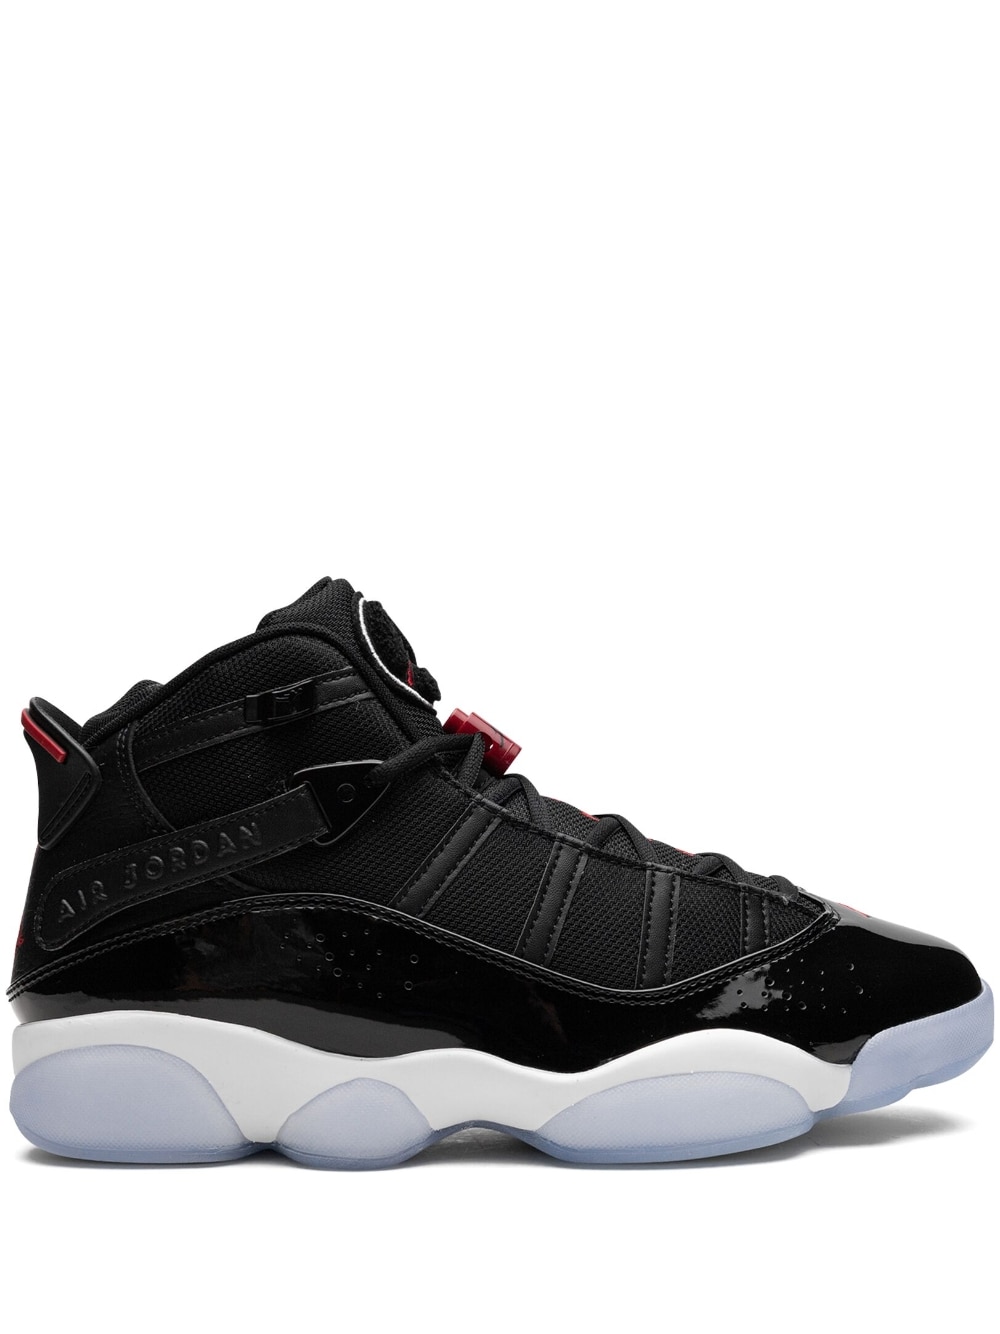 Jordan 6 Rings "Black/Gym Red/White" sneakers